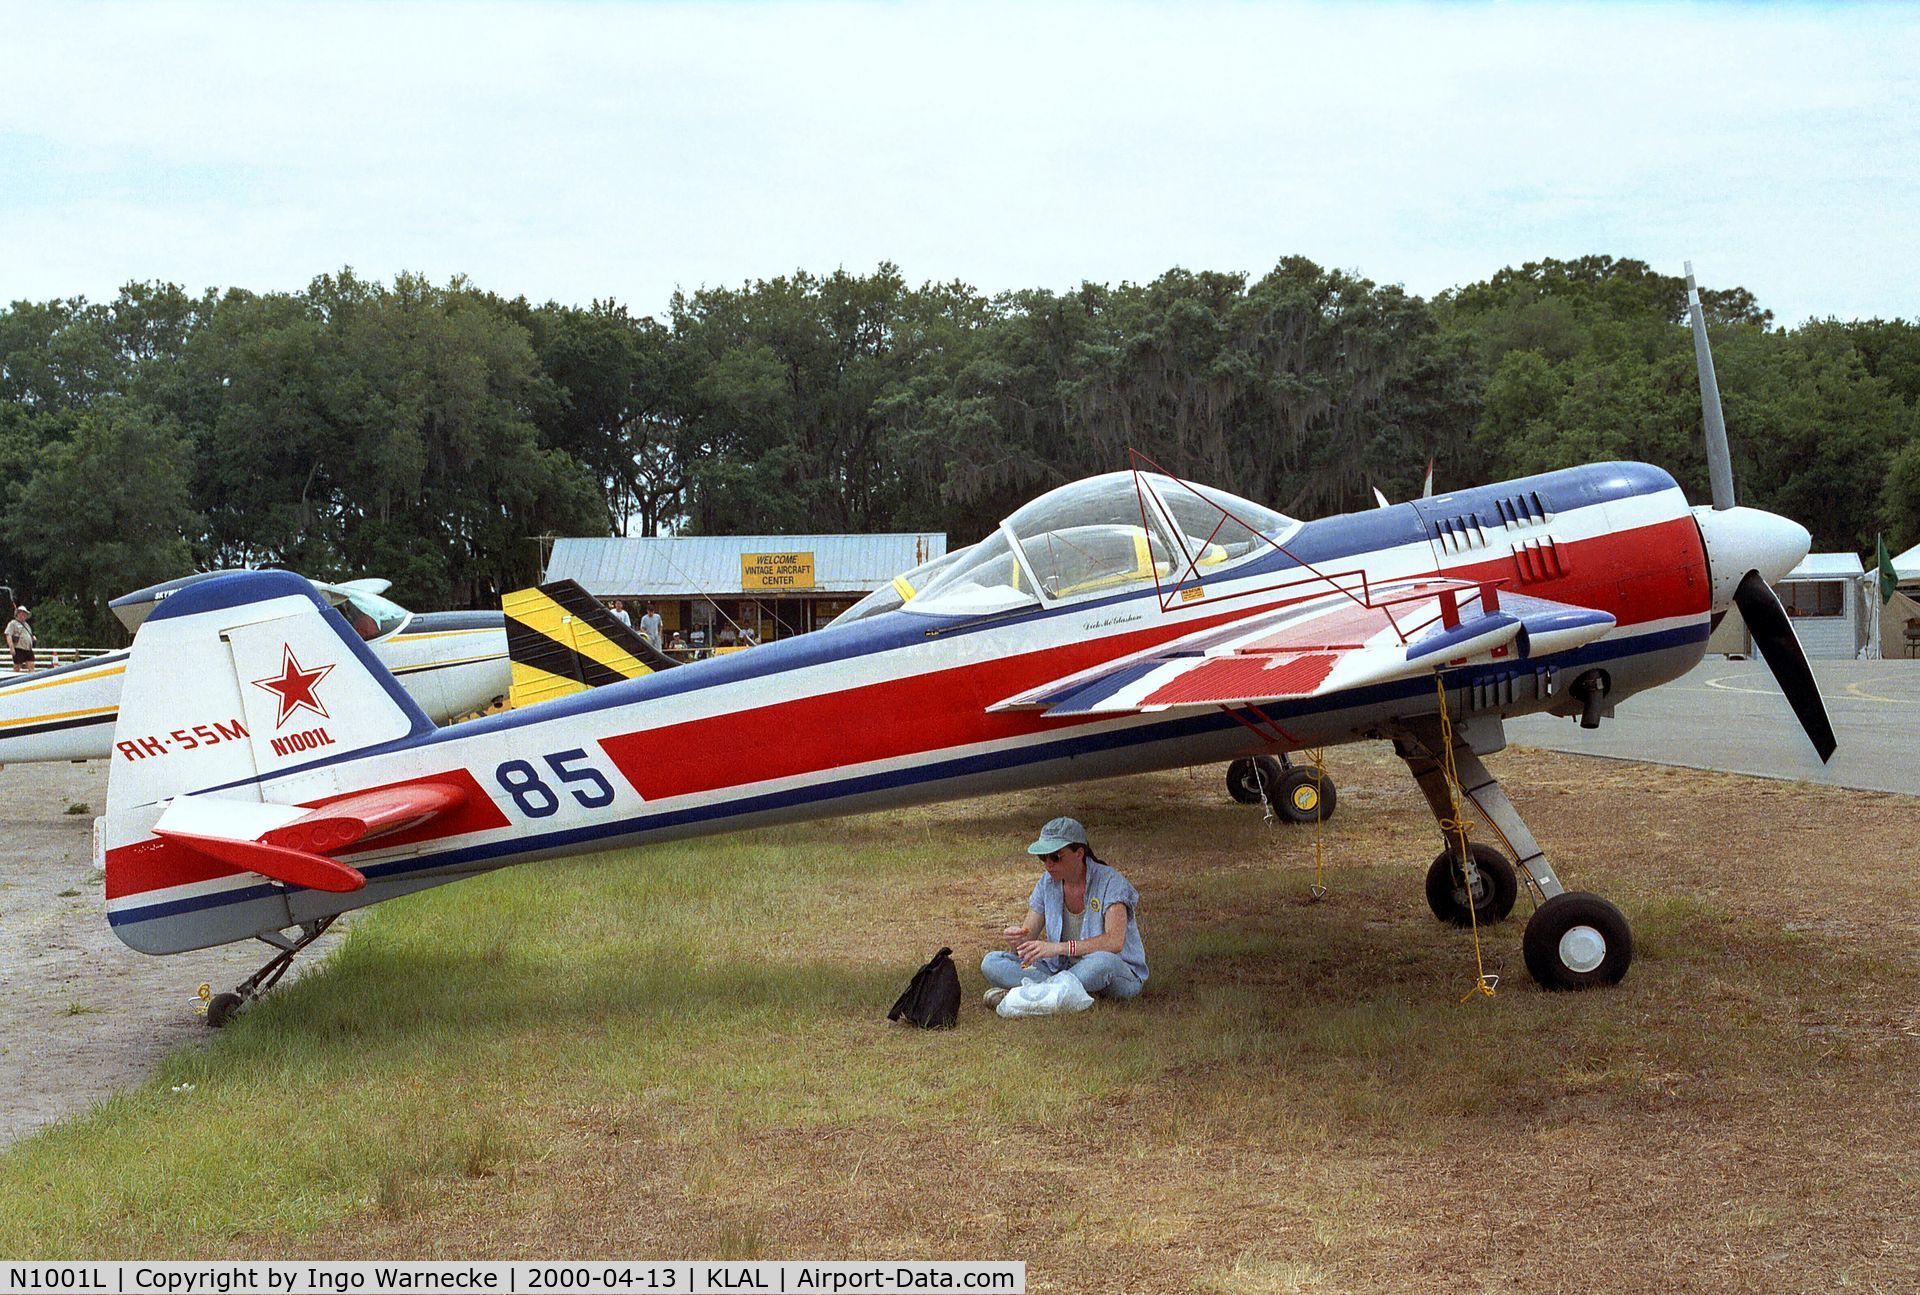 N1001L, 1996 Yakovlev Yak-55M C/N 1001, Yakovlev Yak-55M at 2000 Sun 'n Fun, Lakeland FL